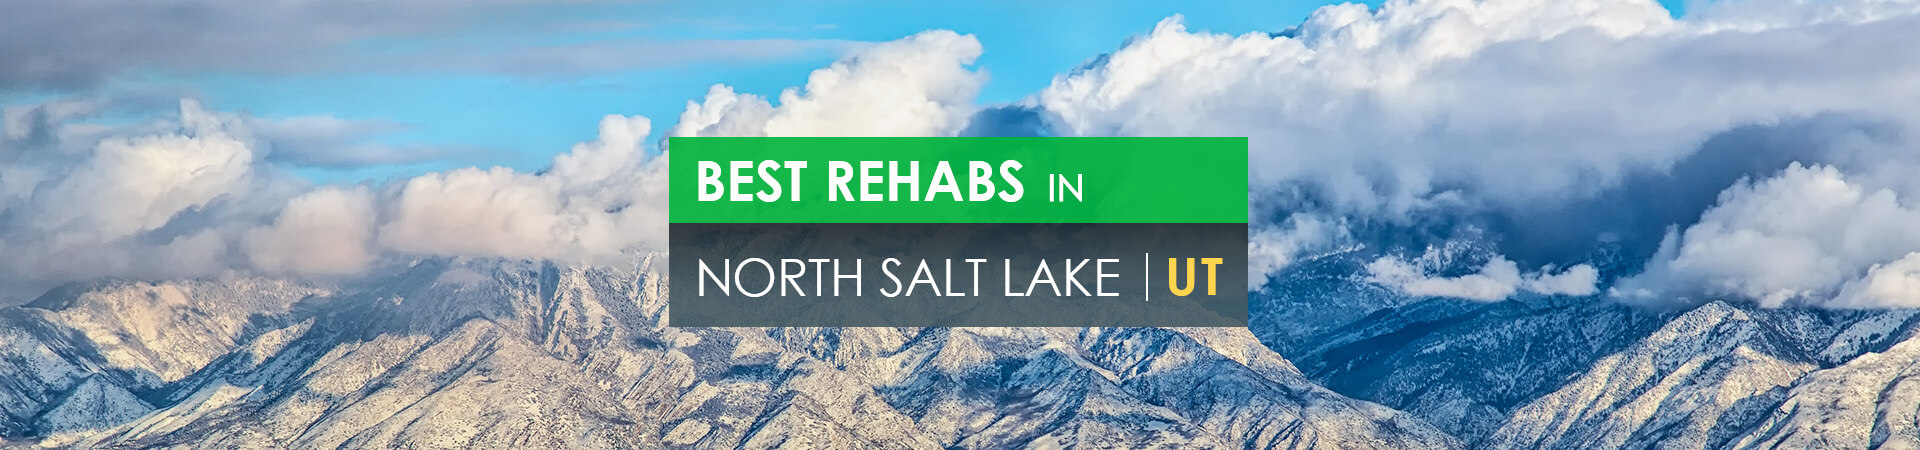 Best rehabs in North Salt Lake, UT